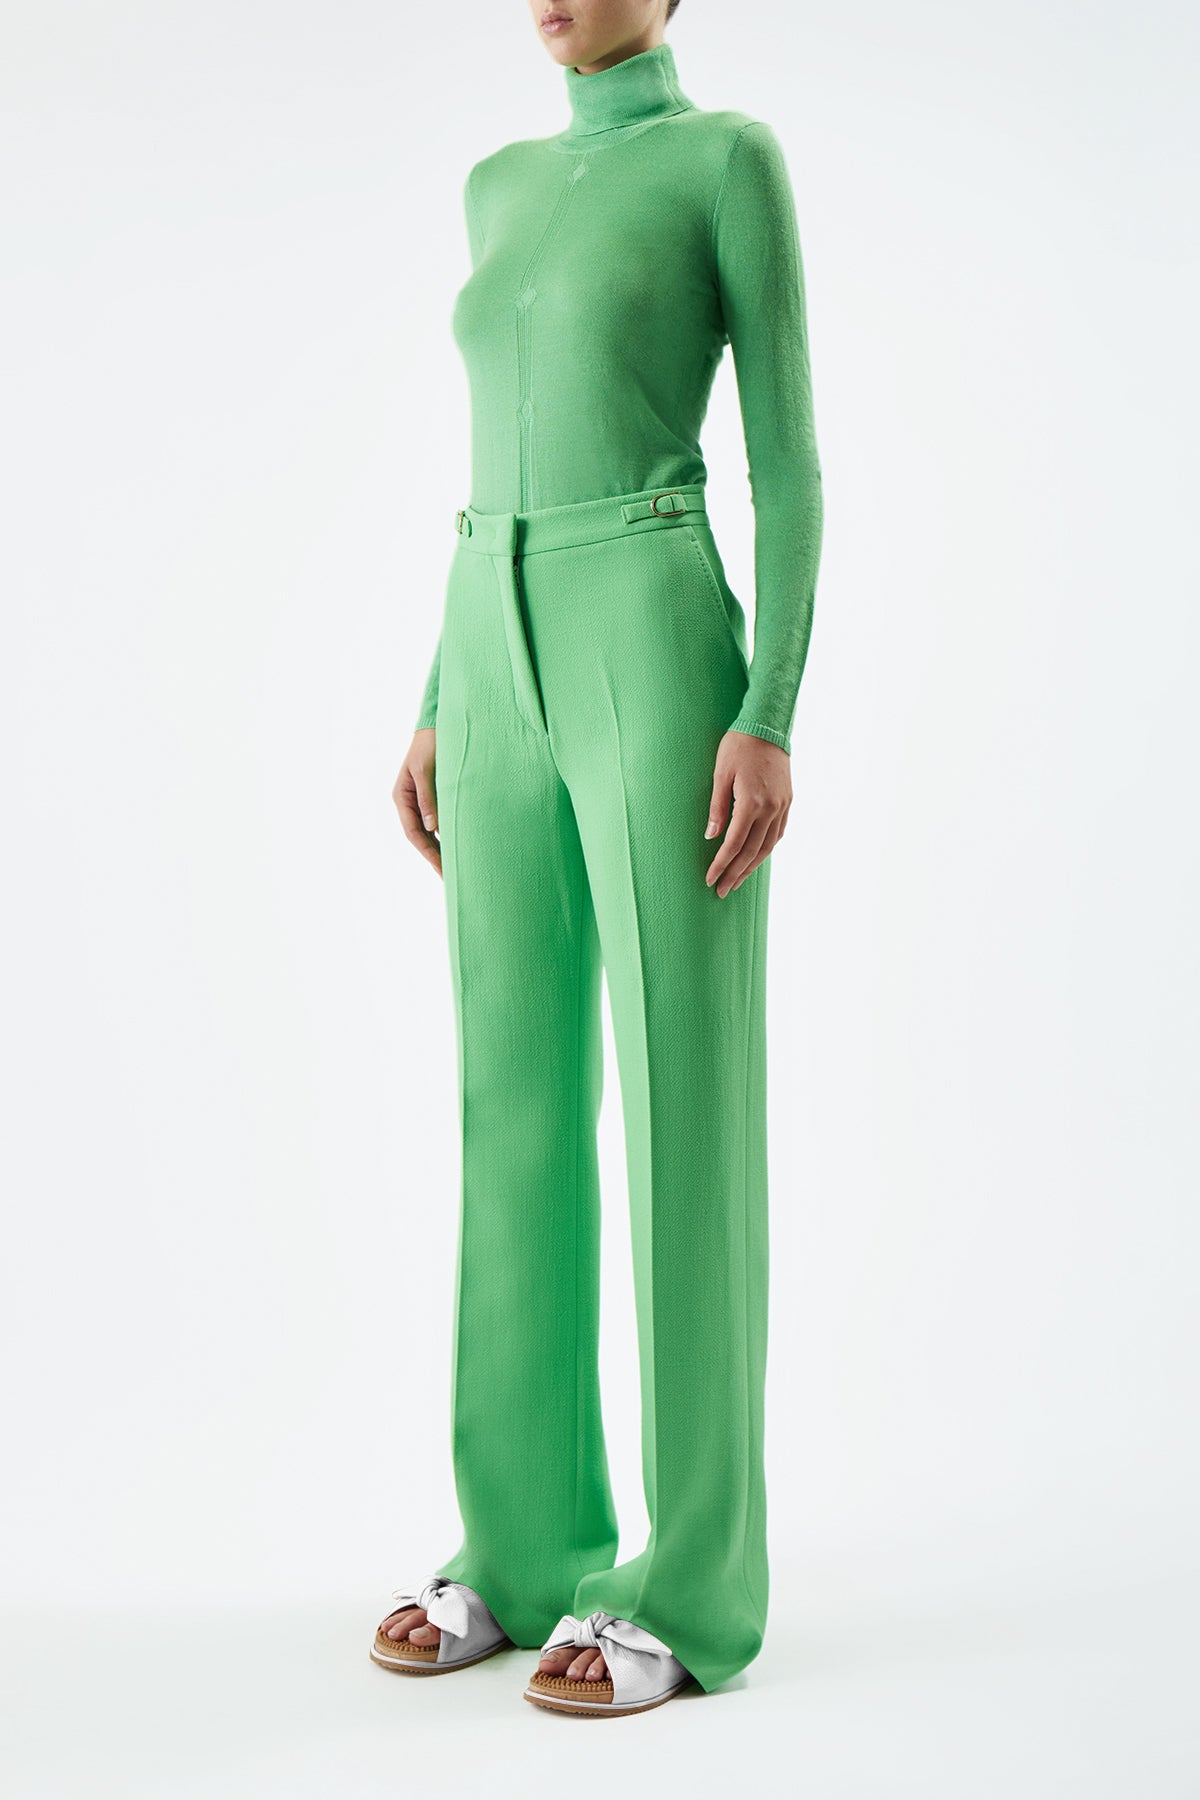 Steinem Turtleneck in Fluorescent Green Silk Cashmere